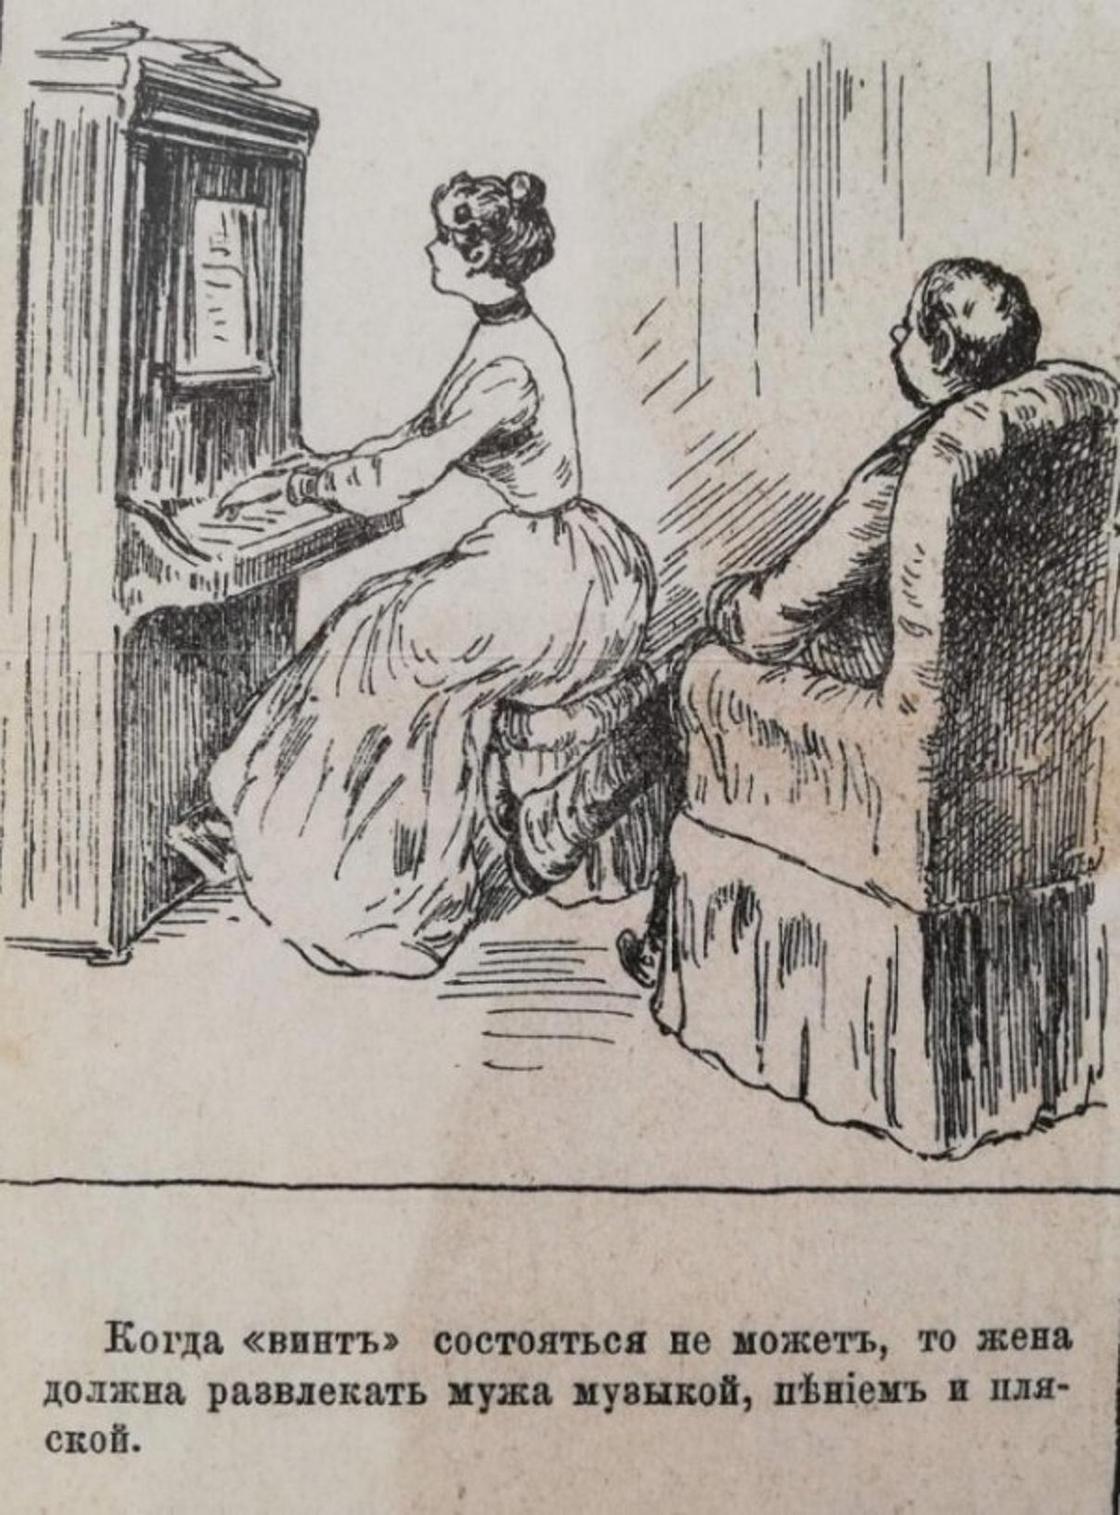 Иллюстрации из журнала конца 19 века: "Как должна вести себя хорошая жена"